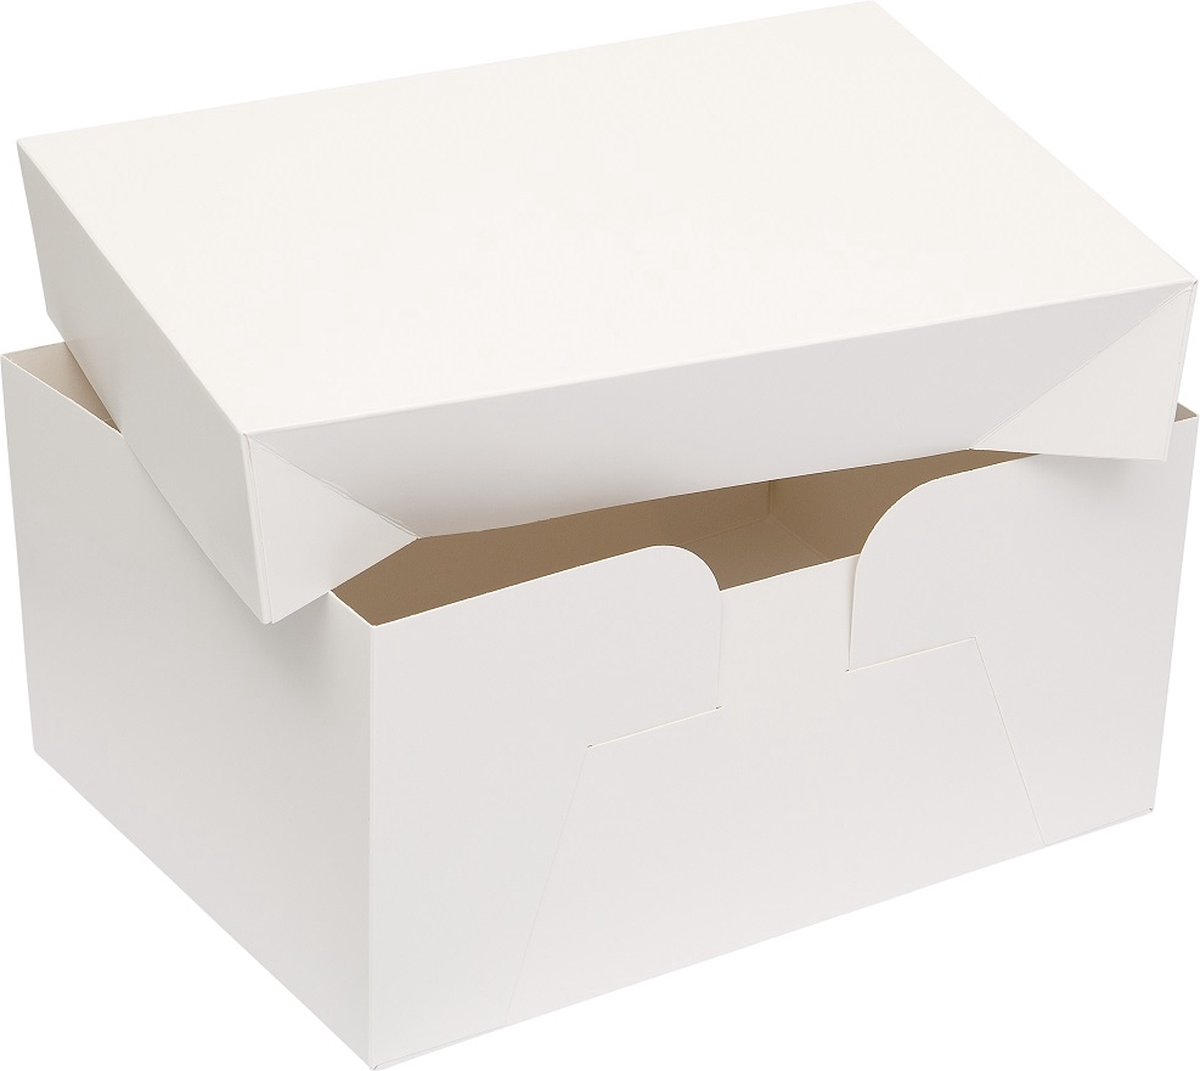 BrandNewCake® Taartdozen met Deksel - 30.4x22.8x15 cm - Taartdoos Karton - Cakedoos - 3 Stuks - Wit